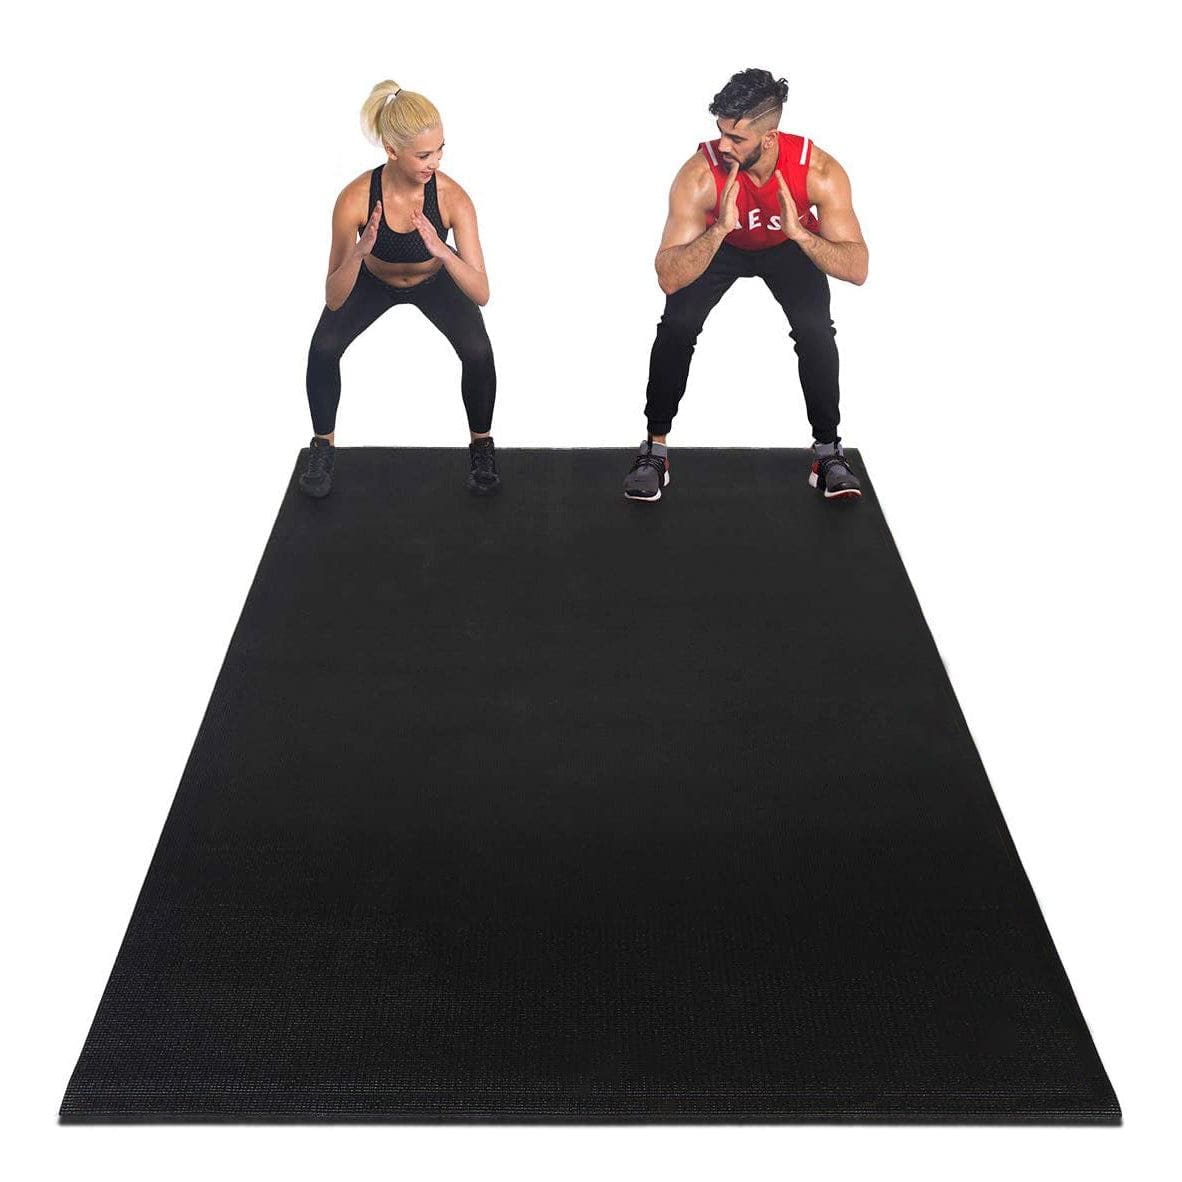 SALE) YUREN Yoga Mat Large Exercise Mat, Thick Workout Mat, Ultra